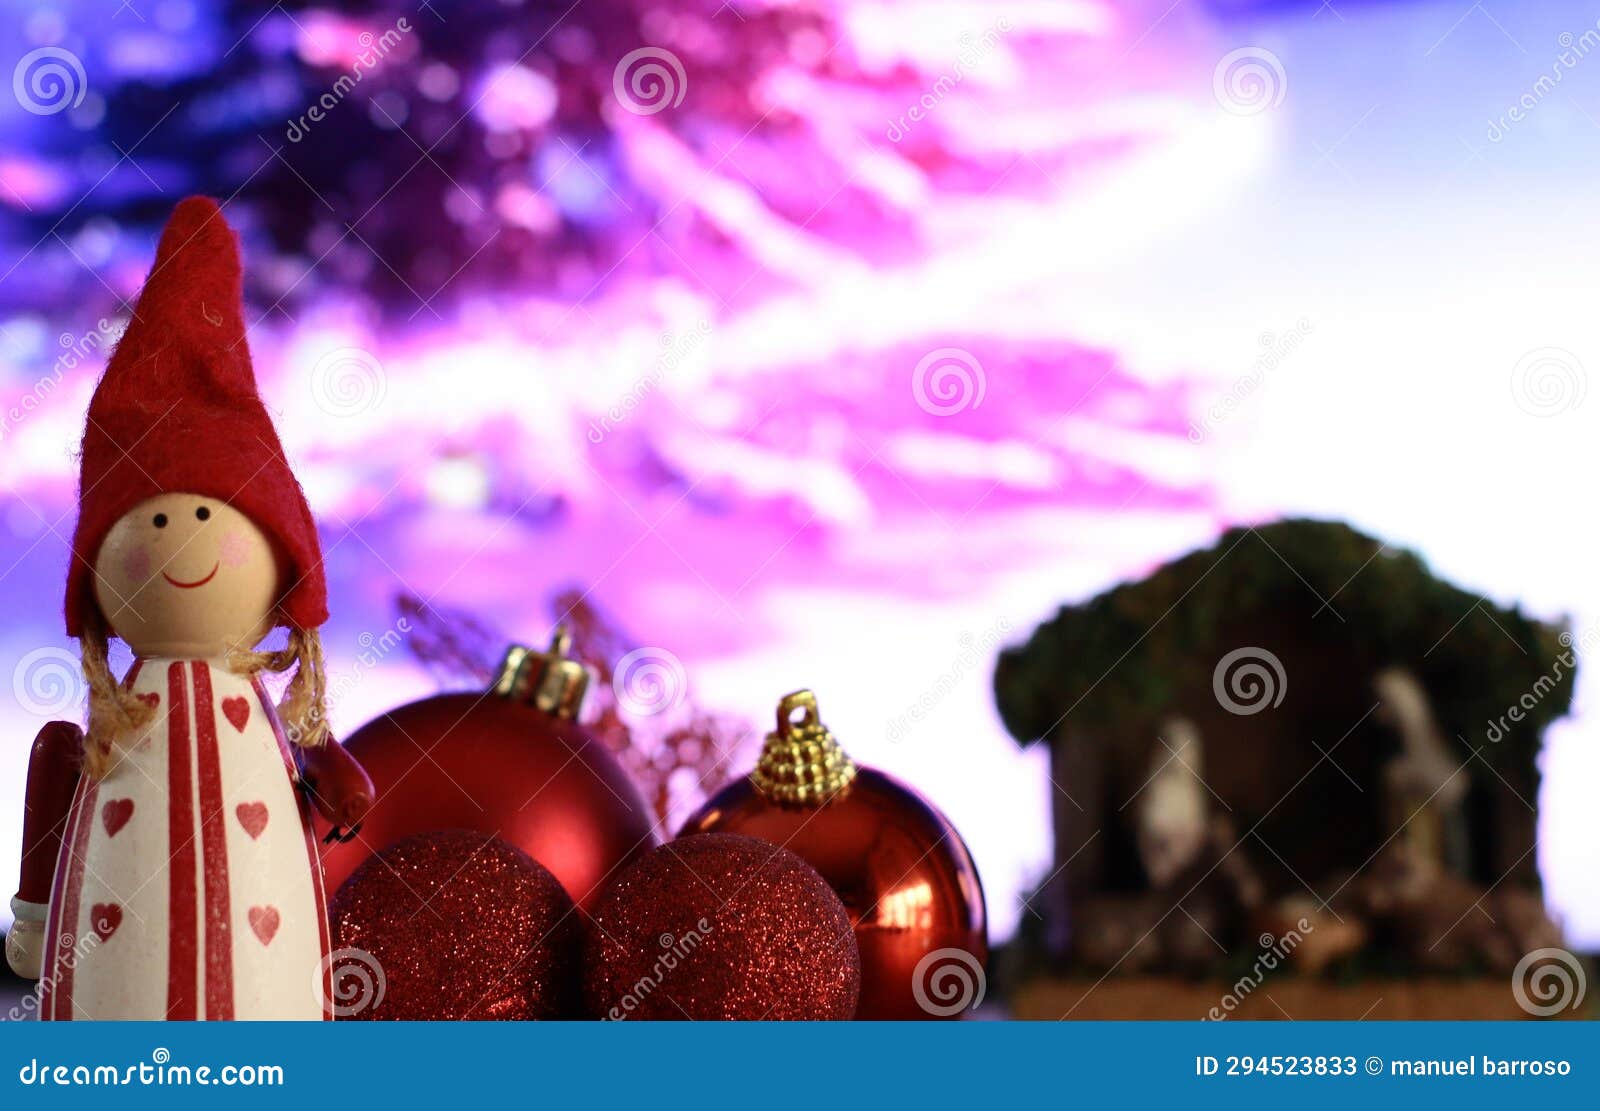 duende navideÃ±o con bols de navidad rojas brillantes y mates con portal de belen y arbol nevado de fondo.